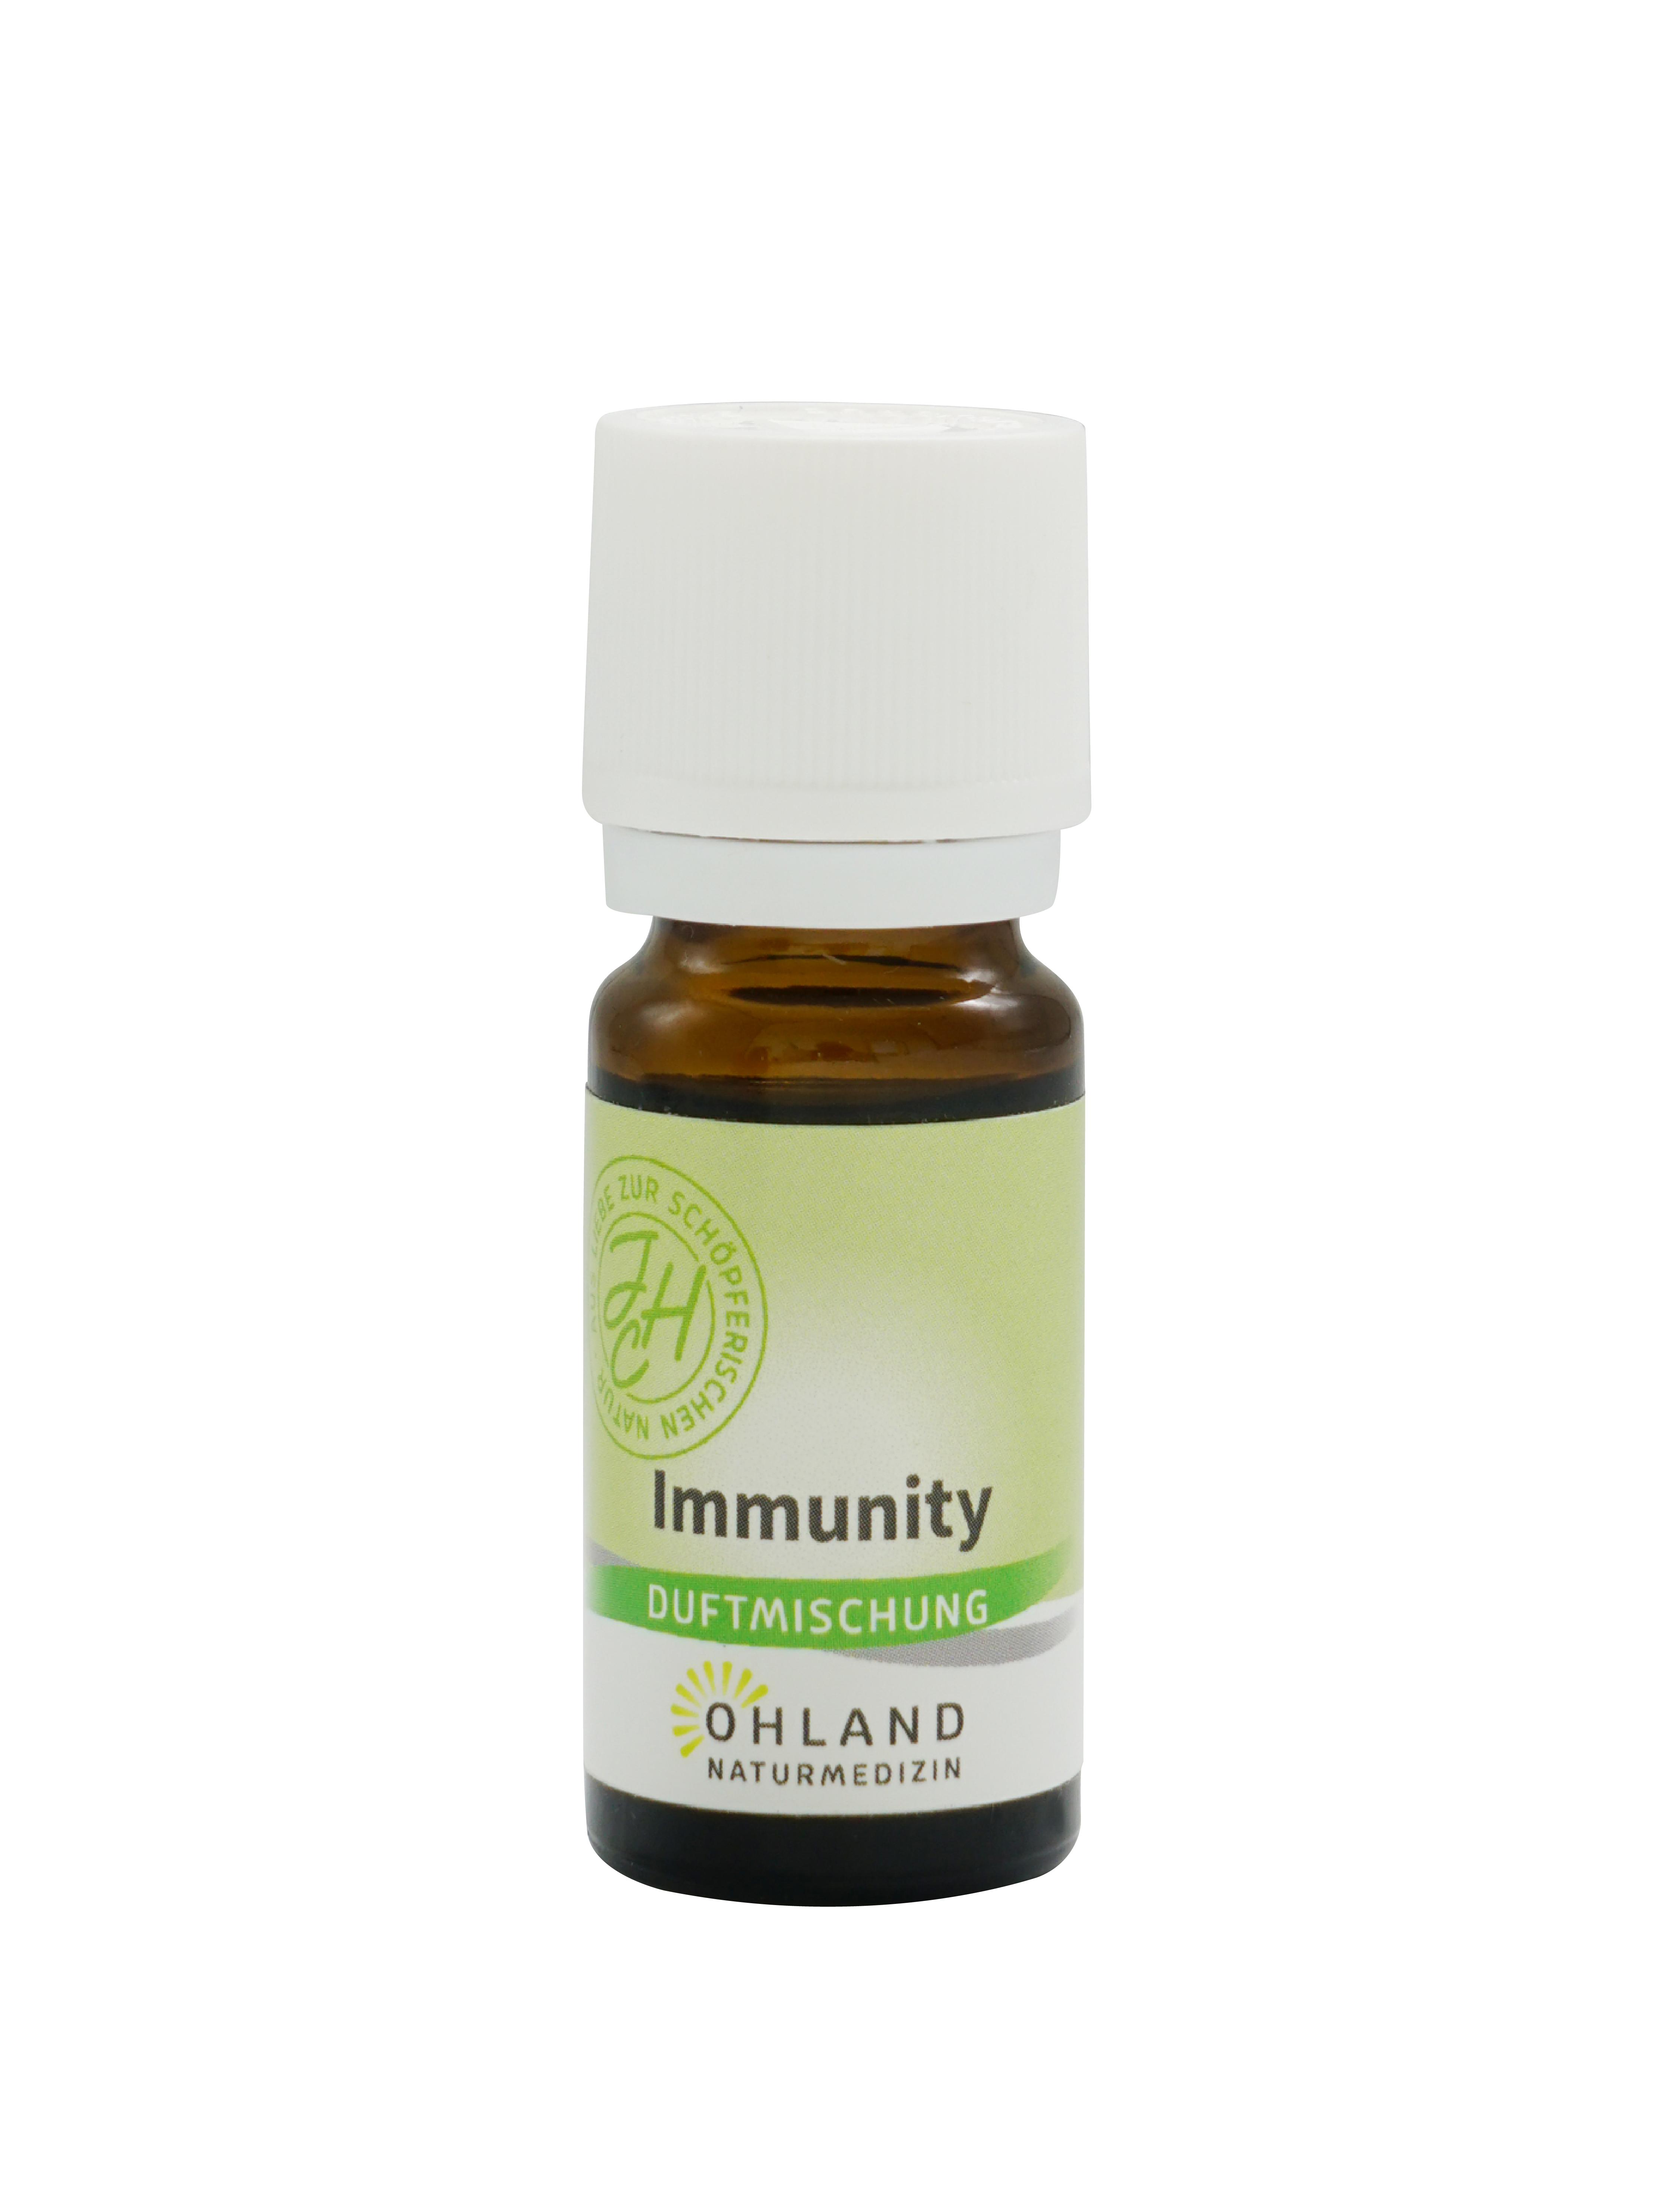 Immunity (Duftmischung)